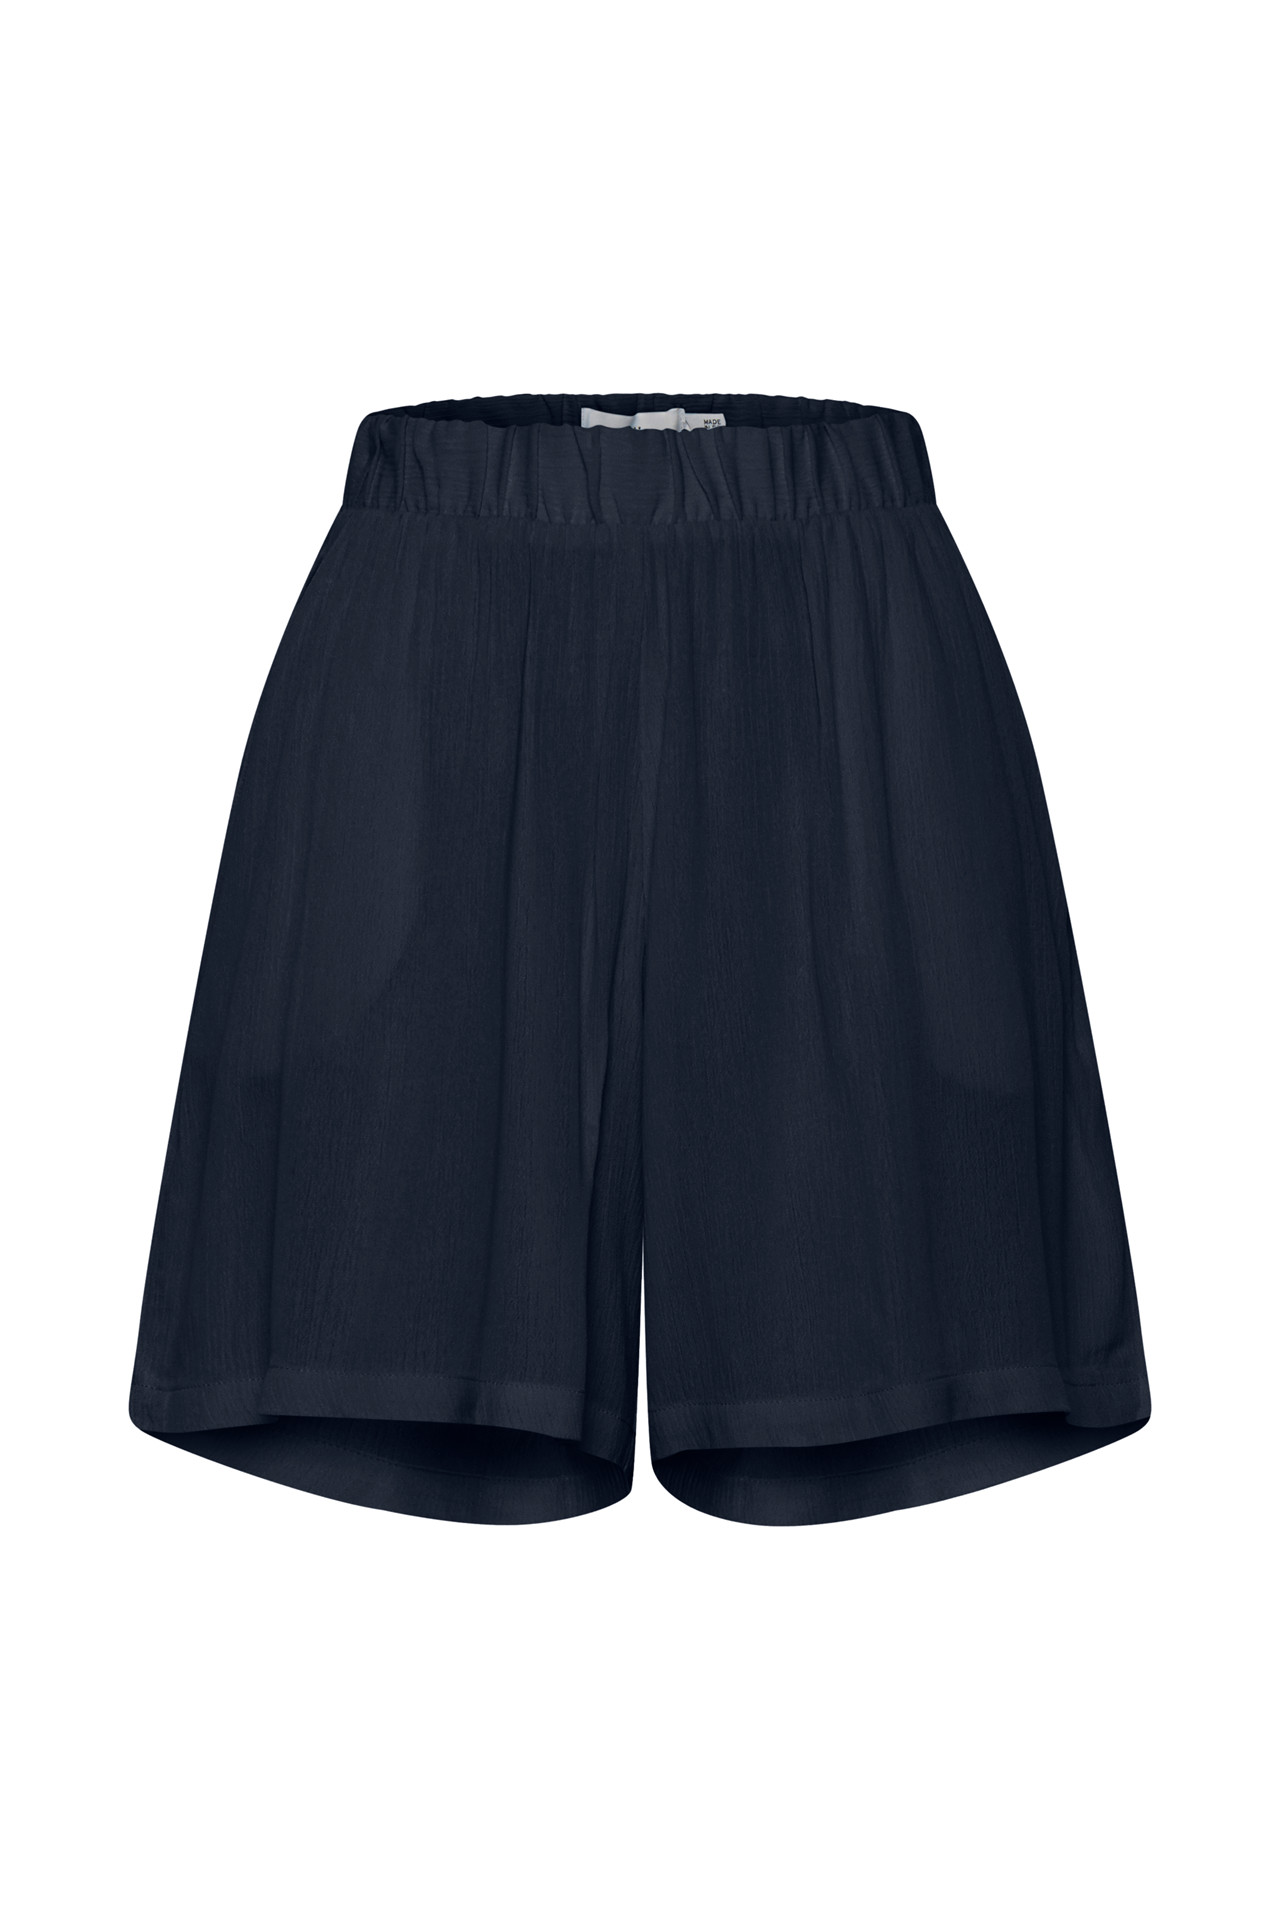 Ichi Marrakech Shorts, Farve: Blå, Størrelse: S, Dame